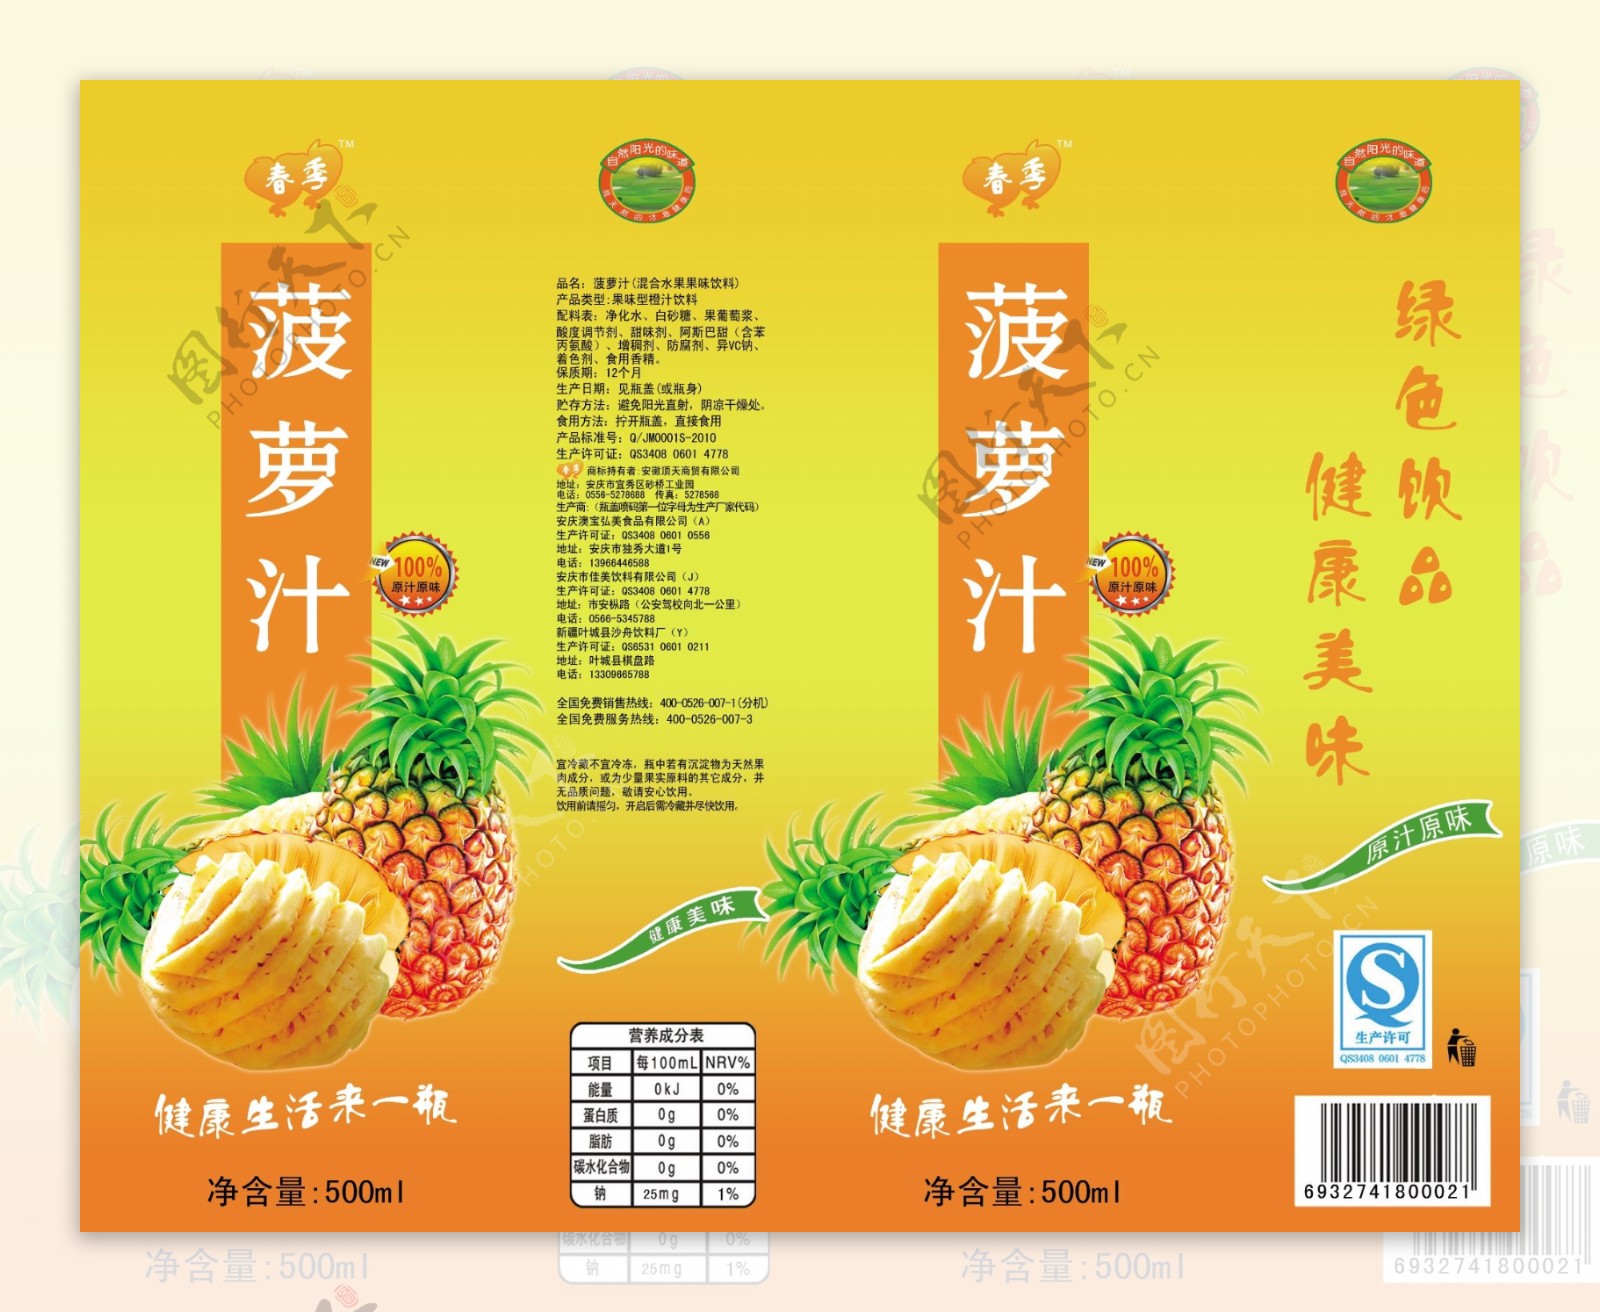 菠萝汁饮料瓶标图片